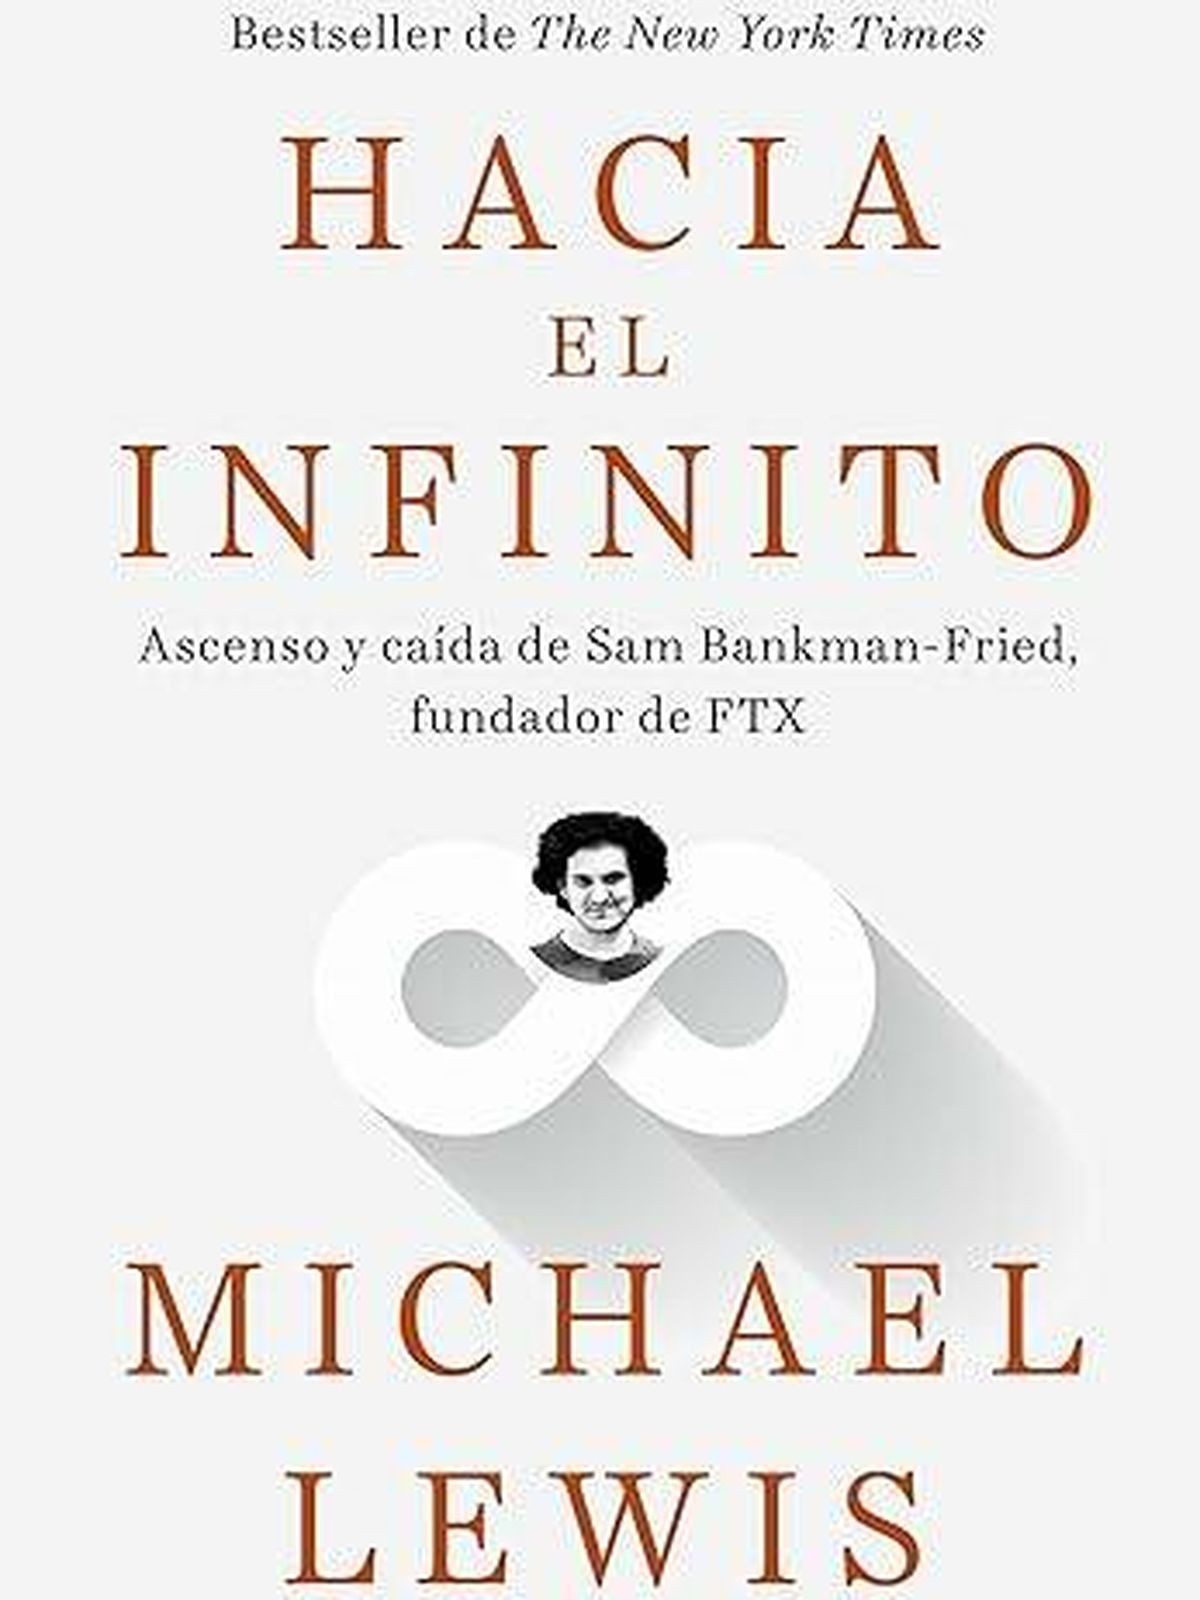 Portada de 'Hacia el infinito', el libro de Michael Lewis sobre el ascenso y caída de Sam Bankman-Fried.